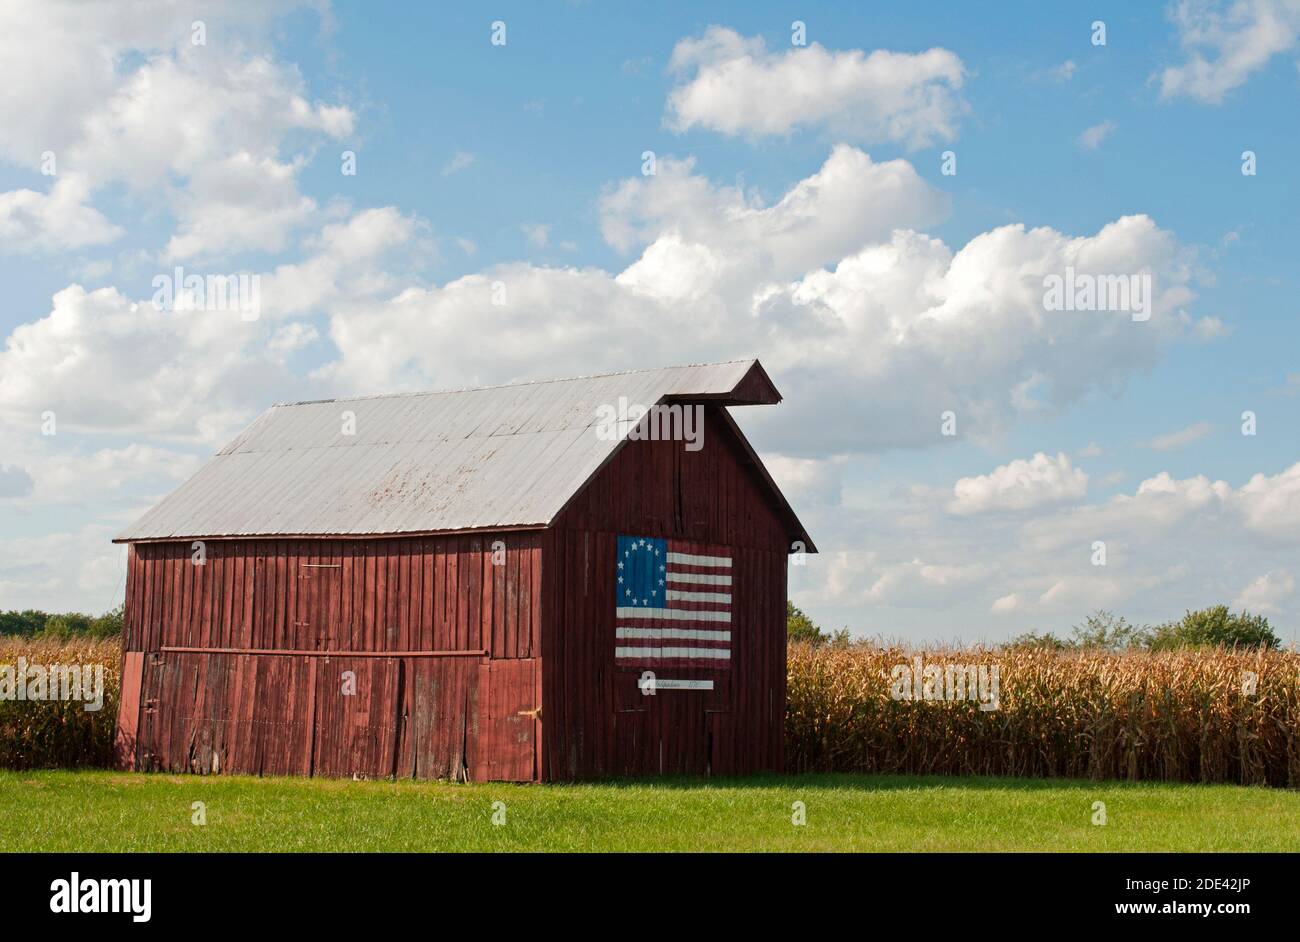 In der Nähe von Kornfeldern an der alten Route 66 in Nilwood, IL, steht eine Holzscheune mit einem Gemälde der 13-Sterne-Flagge Betsy Ross (ein frühamerikanisches Flaggendesign). Stockfoto